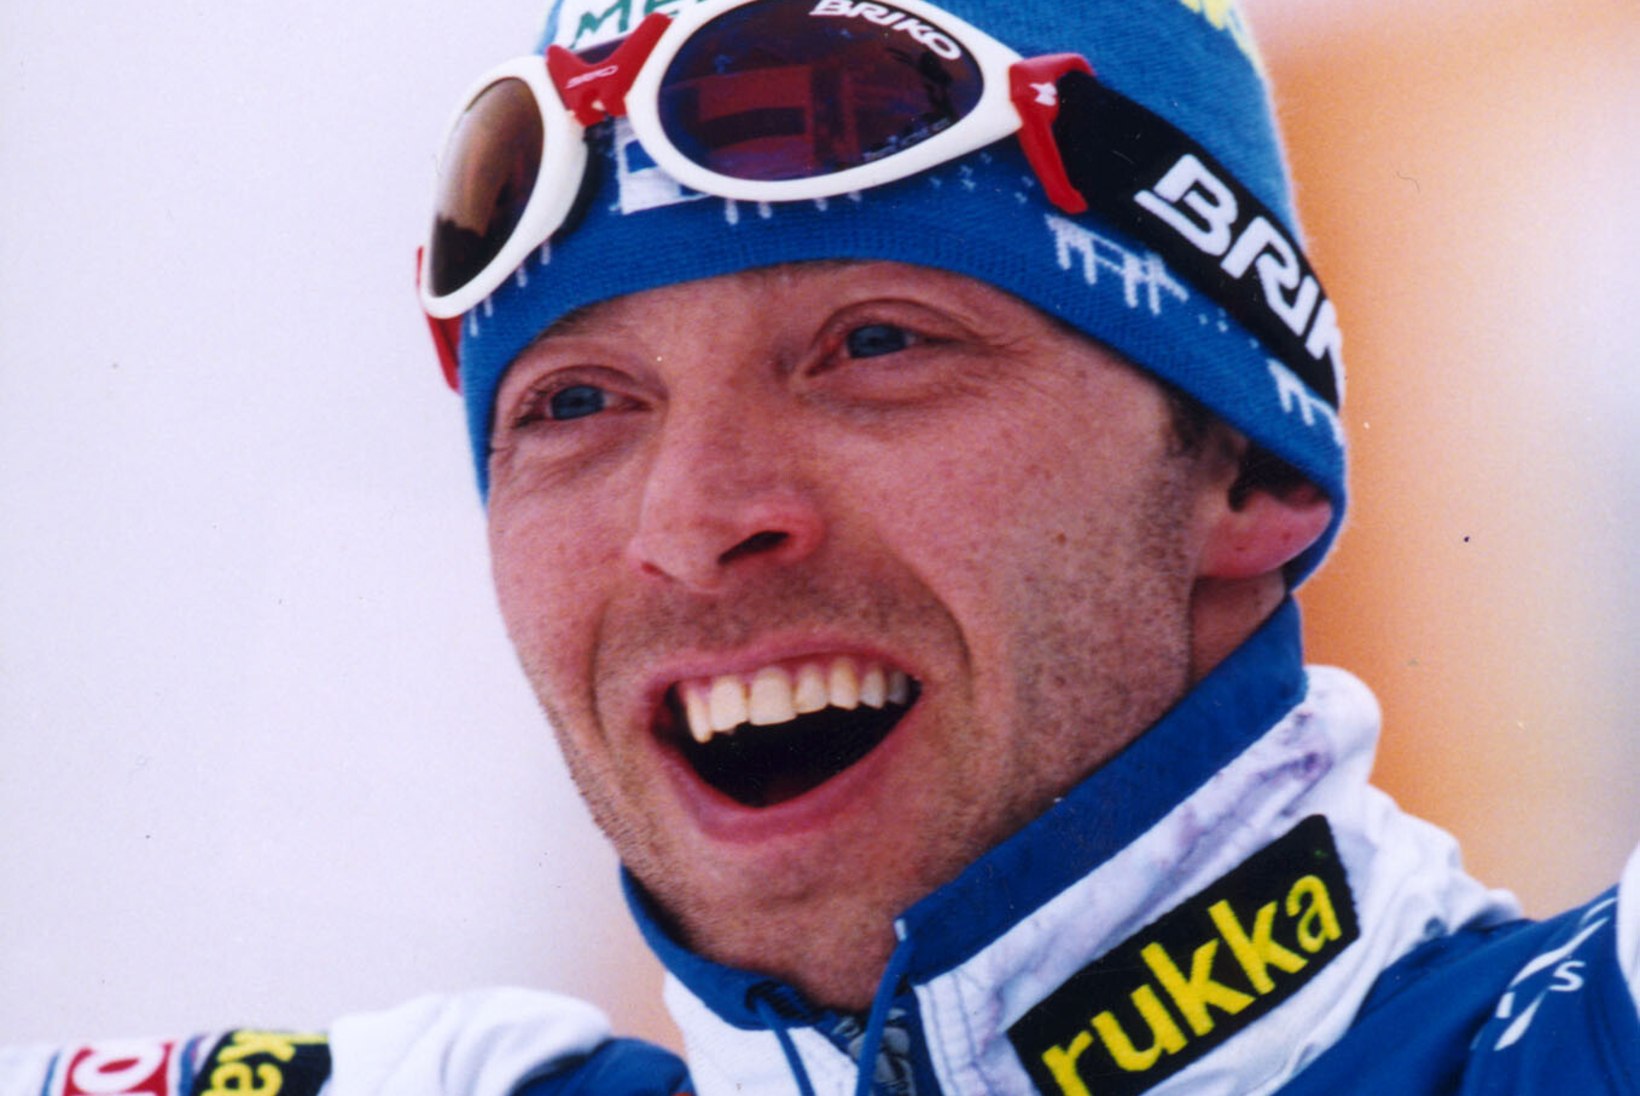 Soome suusaäss räägib oma raamatus olümpiavõitja Mika Myllylä surmast: teave šokeeris teda niivõrd, et ta hakkas värisema